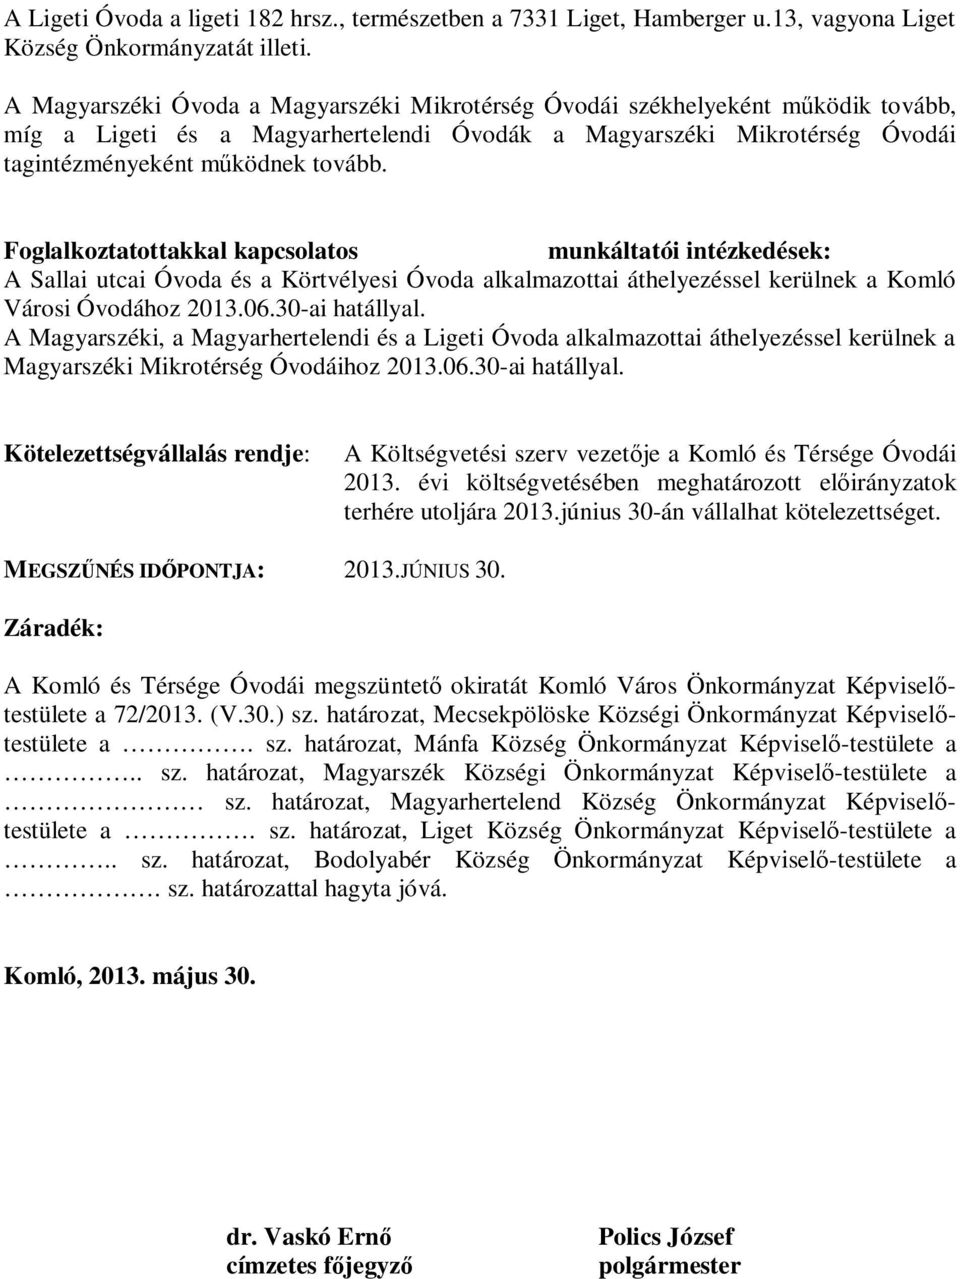 Foglalkoztatottakkal kapcsolatos munkáltatói intézkedések: A Sallai utcai Óvoda és a Körtvélyesi Óvoda alkalmazottai áthelyezéssel kerülnek a Komló Városi Óvodához 2013.06.30-ai hatállyal.